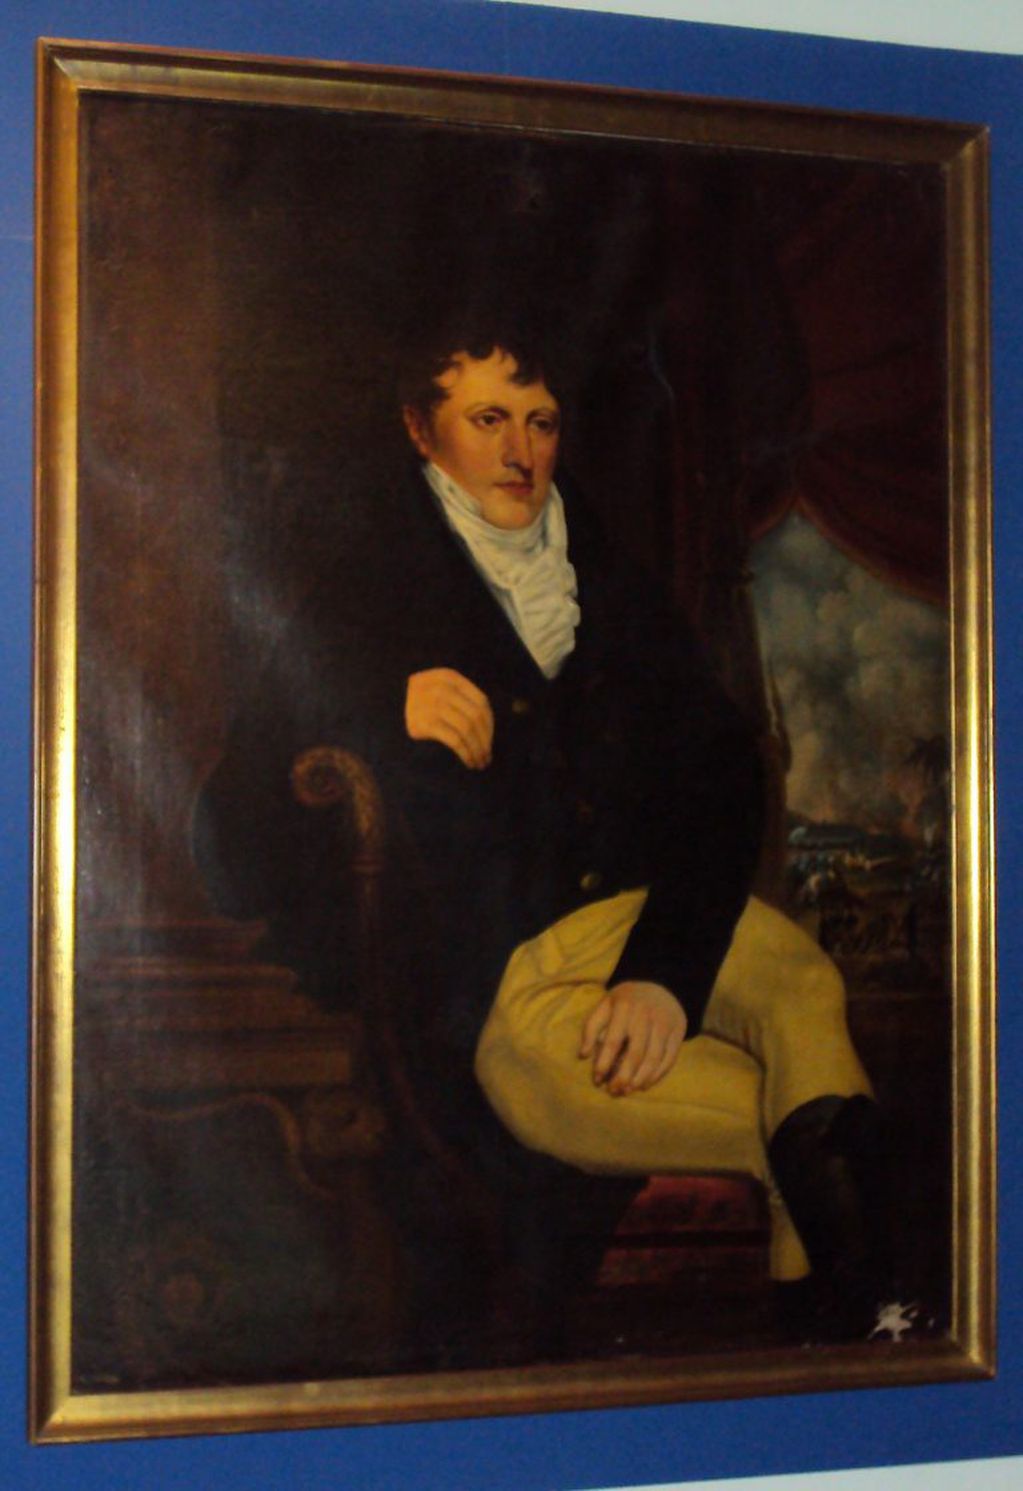 Cuadro de Manuel Belgrano en la Casa Histórica de Tucumán.